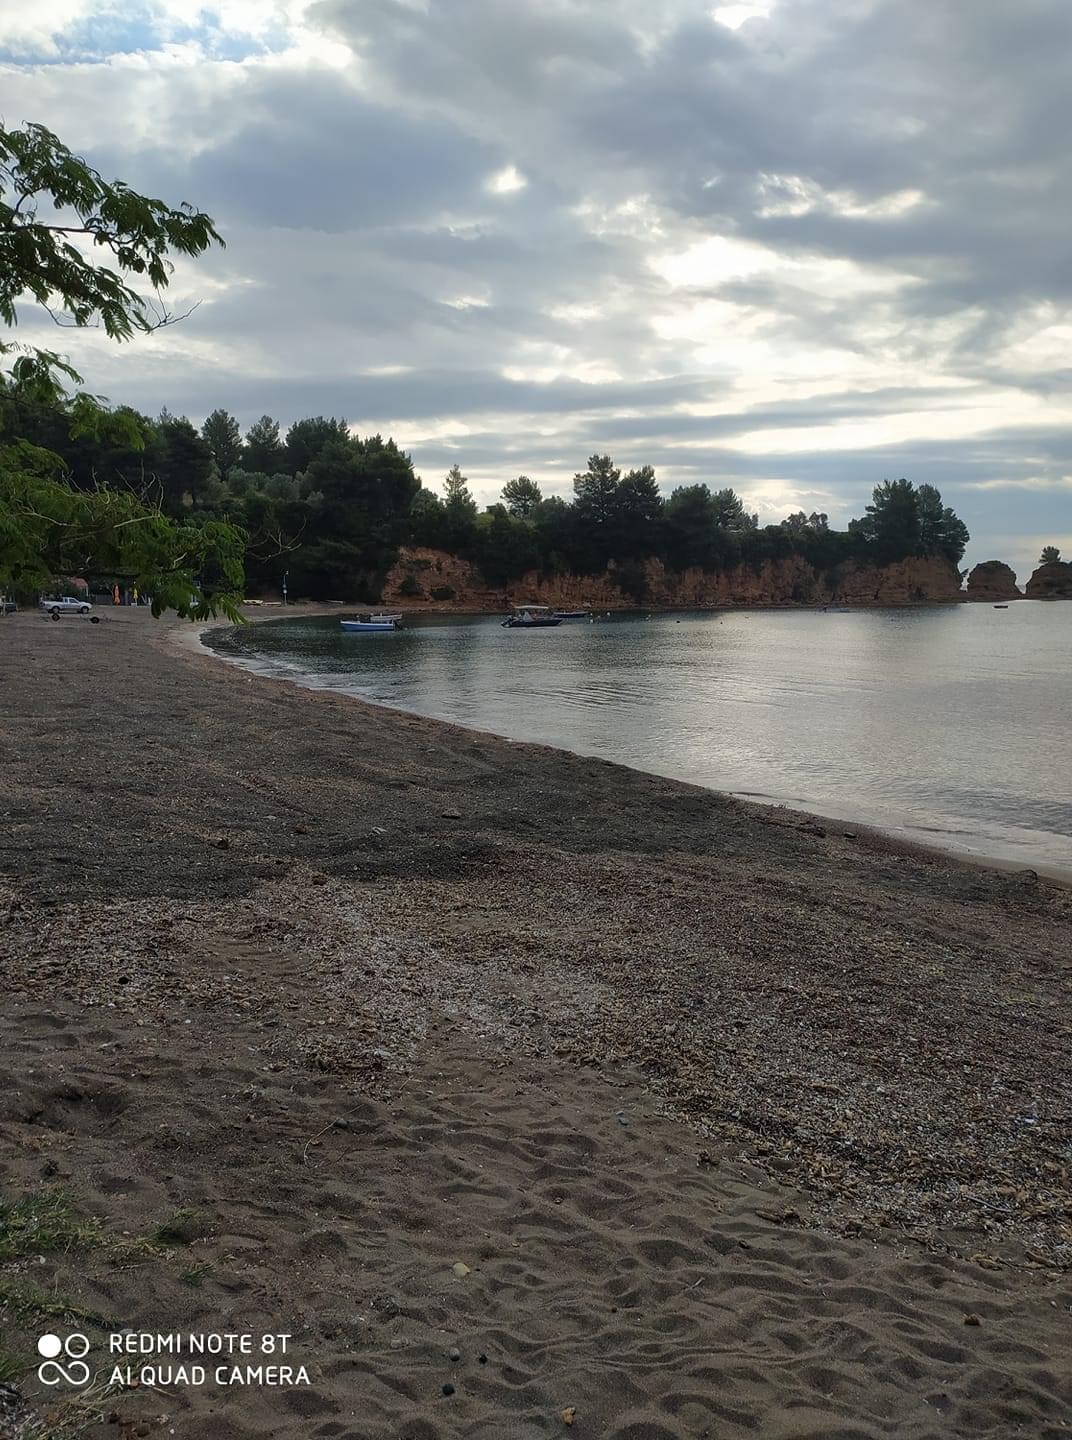 Τη γραφική παραλία Κοτσικιά επέλεξε ο Τσαπουρνιώτης για να καλωσορίσει το καλοκαίρι